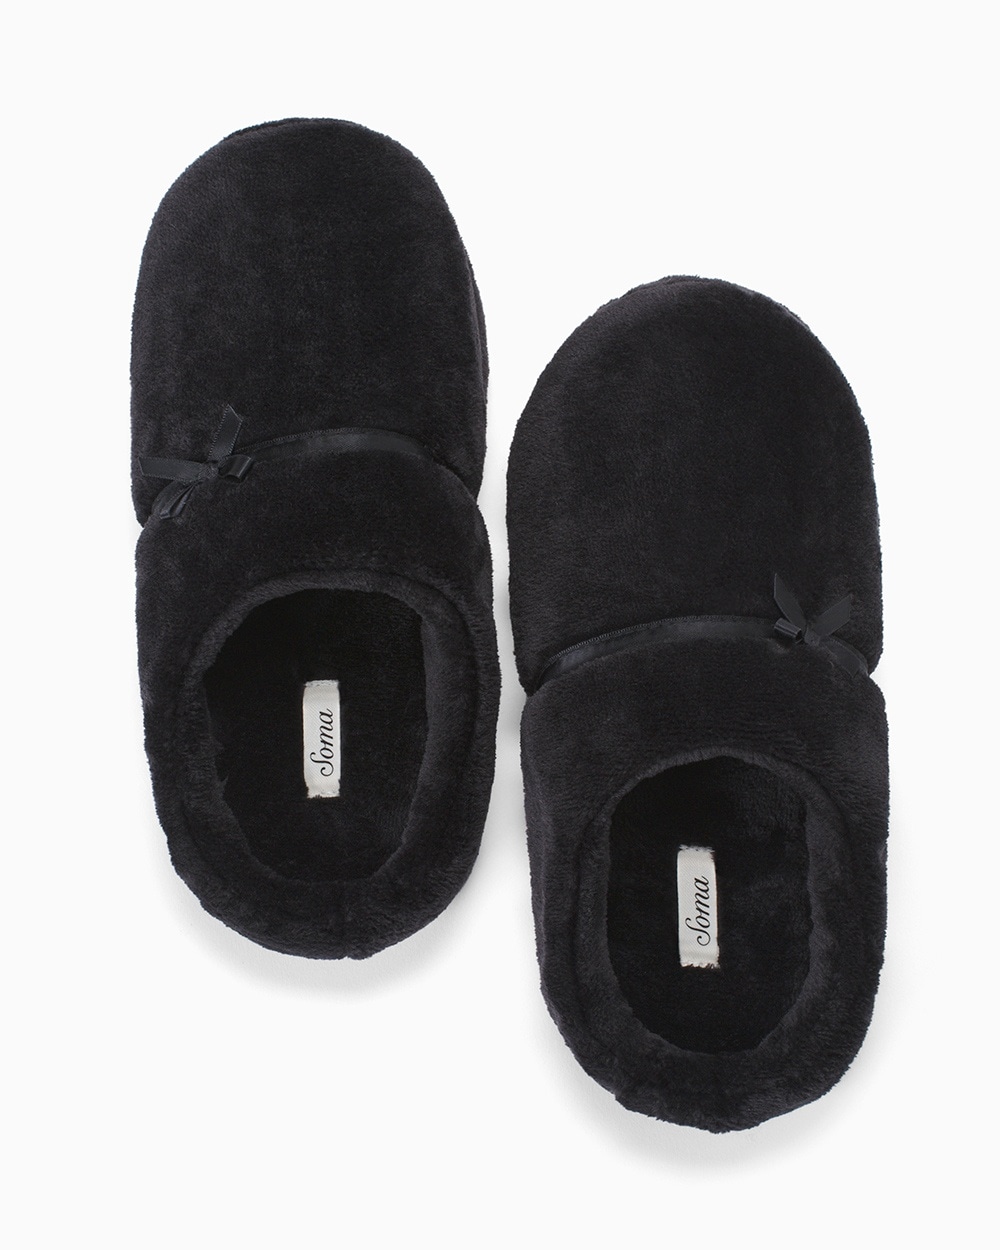 soma house slippers